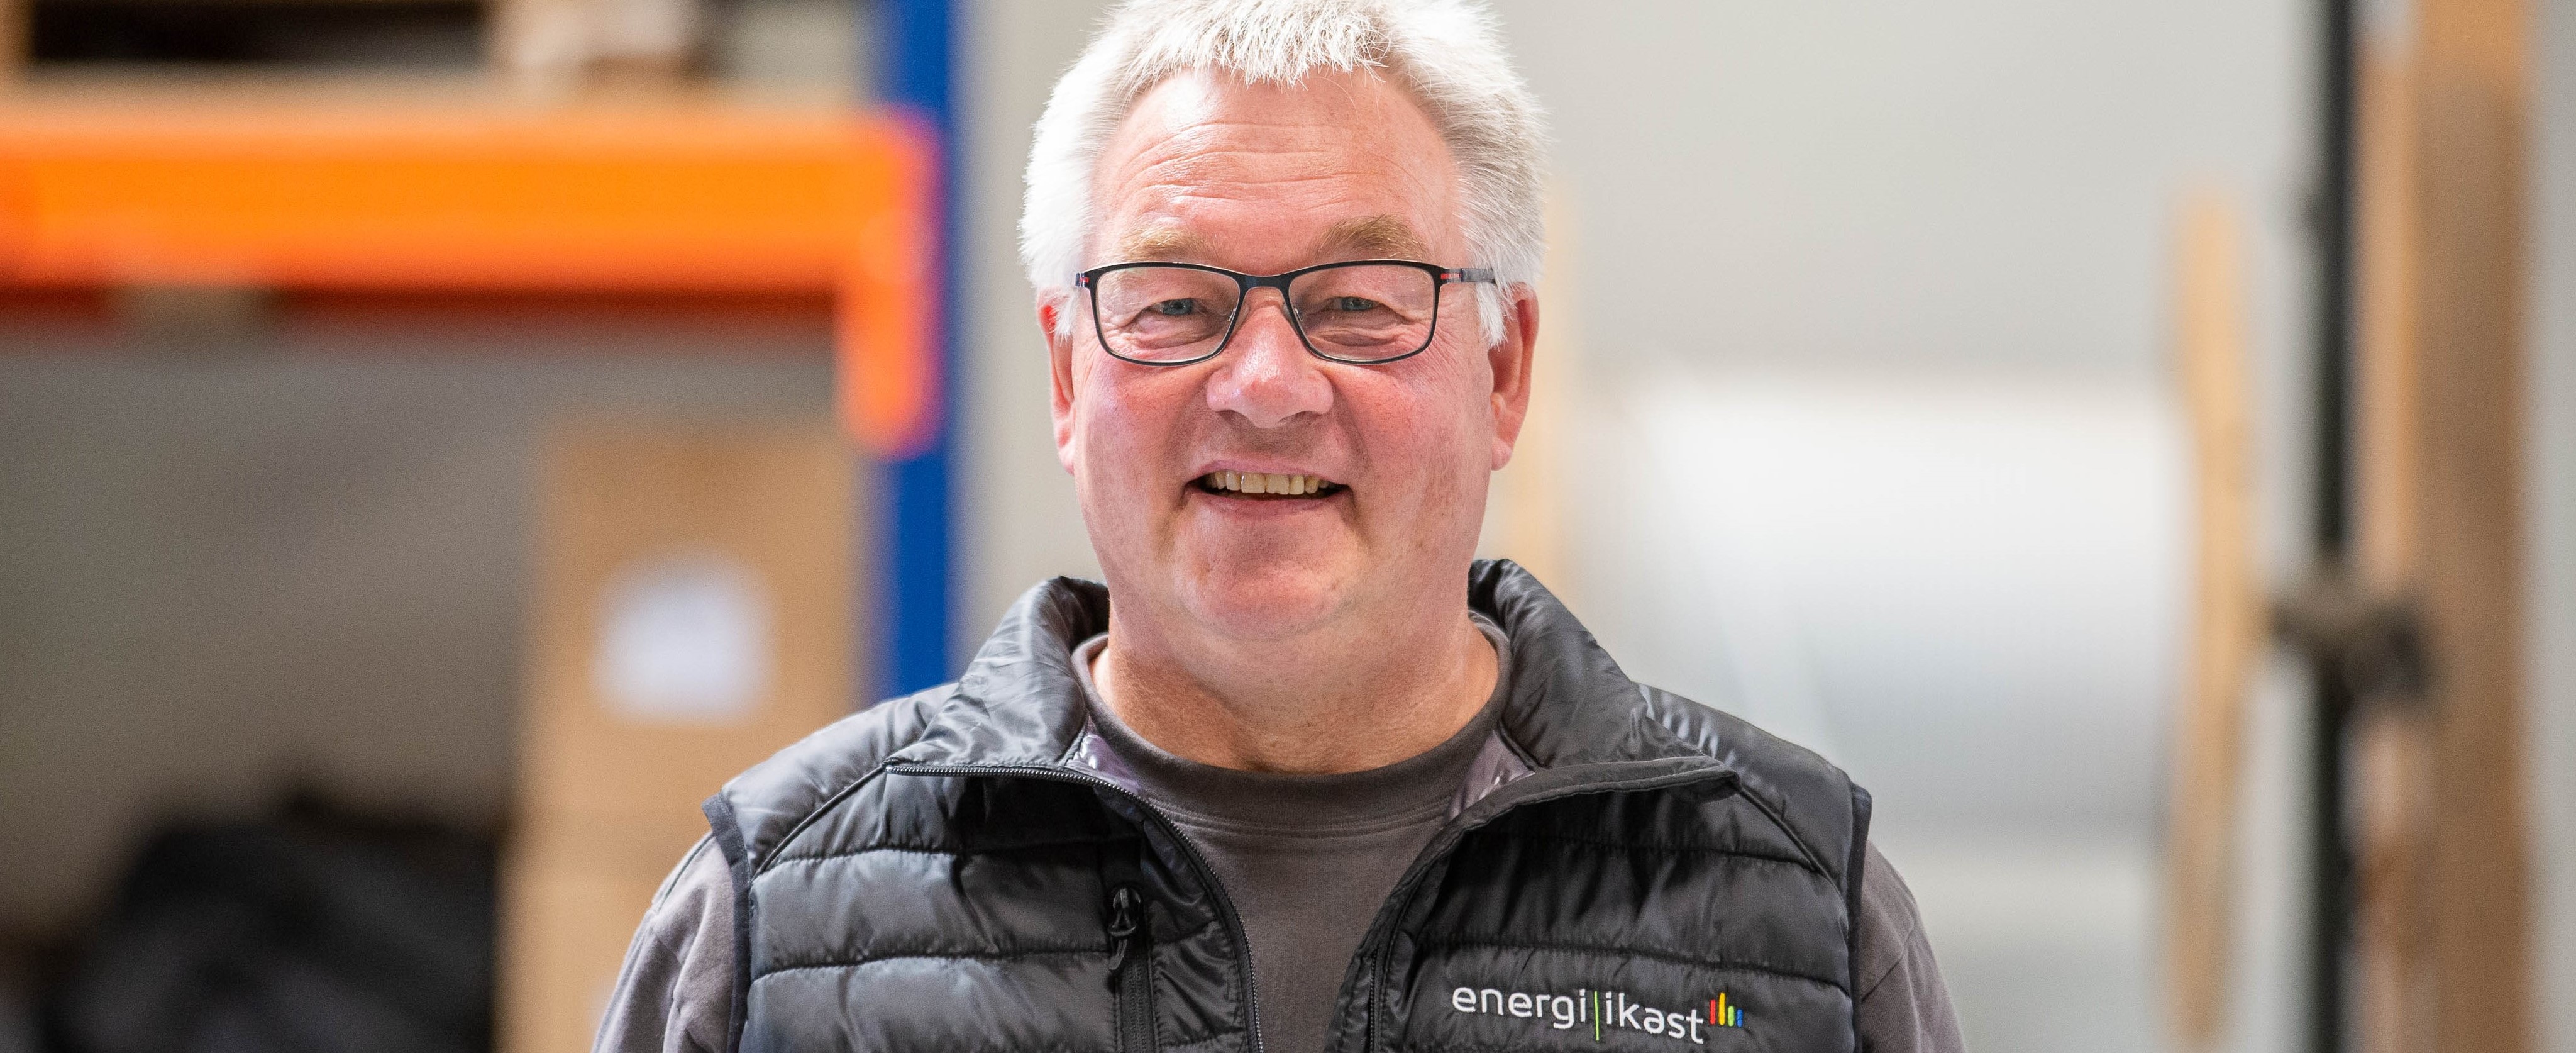 Medarbejder i Energi-Ikast - Søren Møller